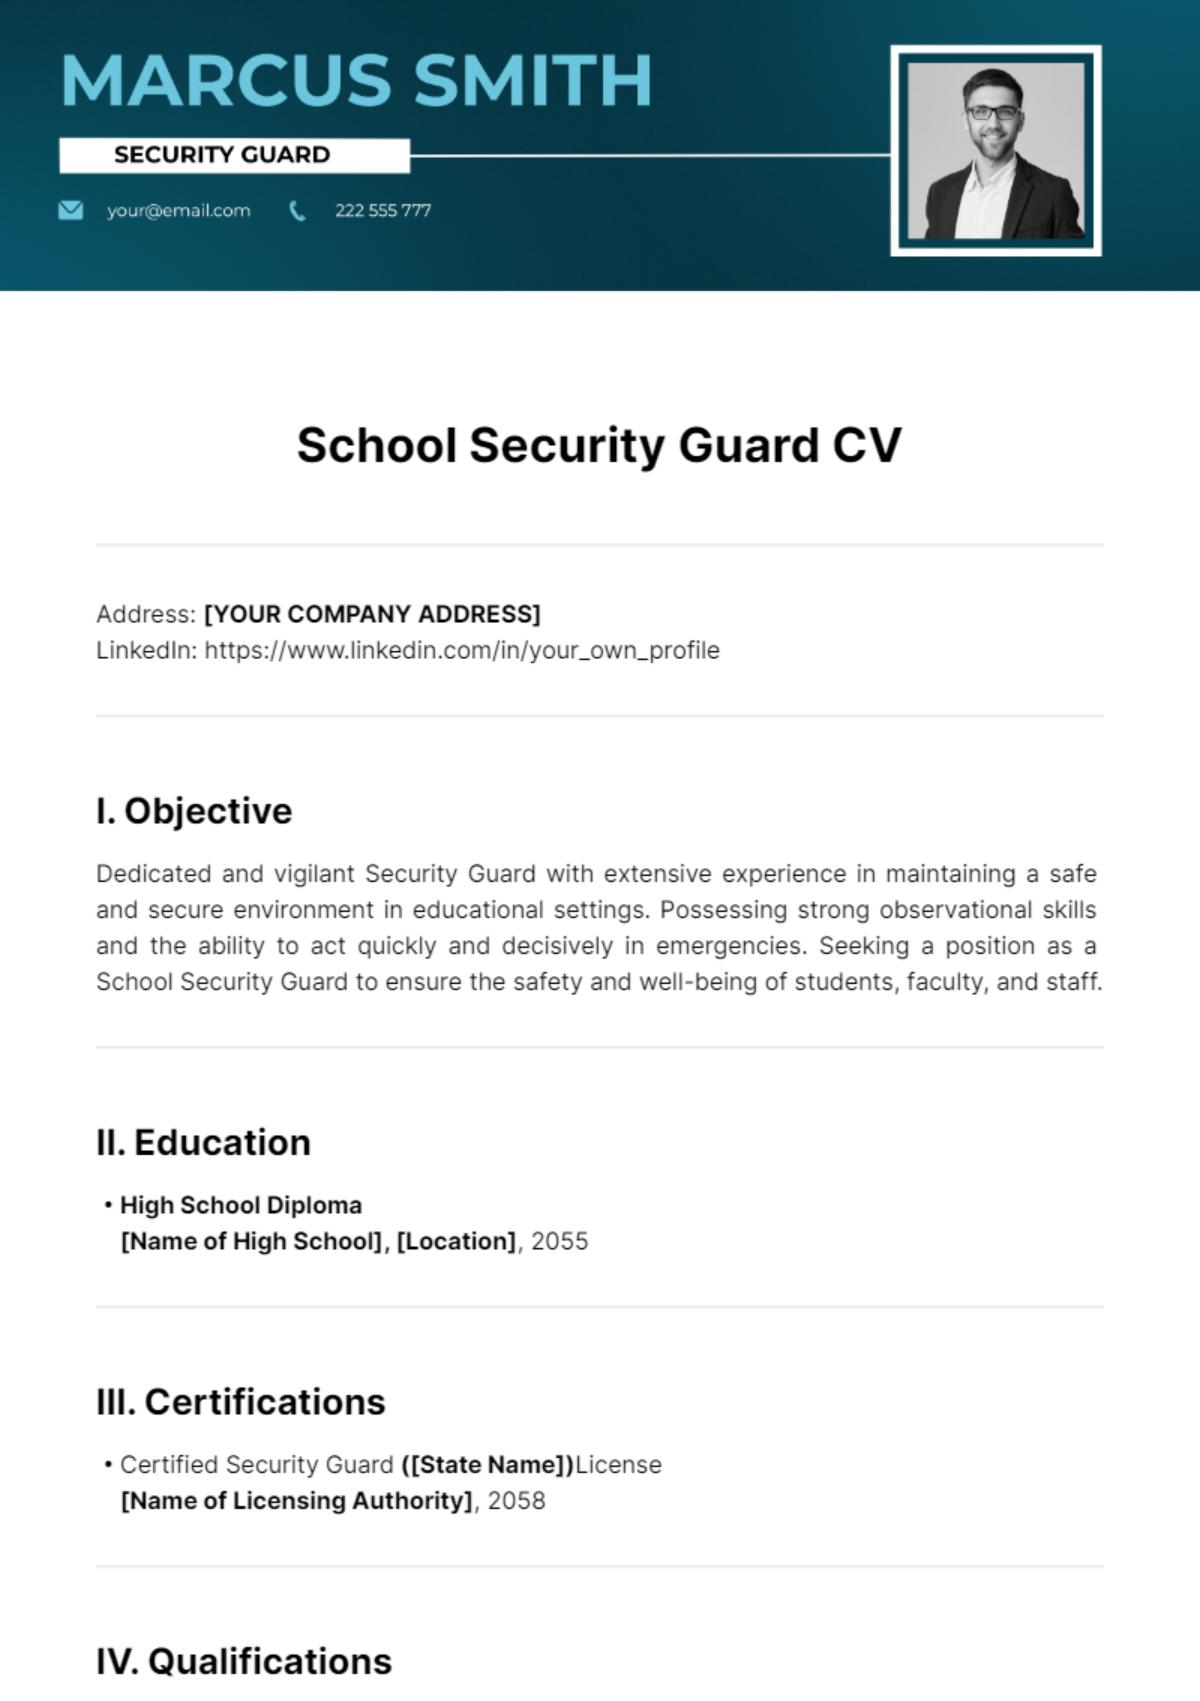 School Security Guard CV Template